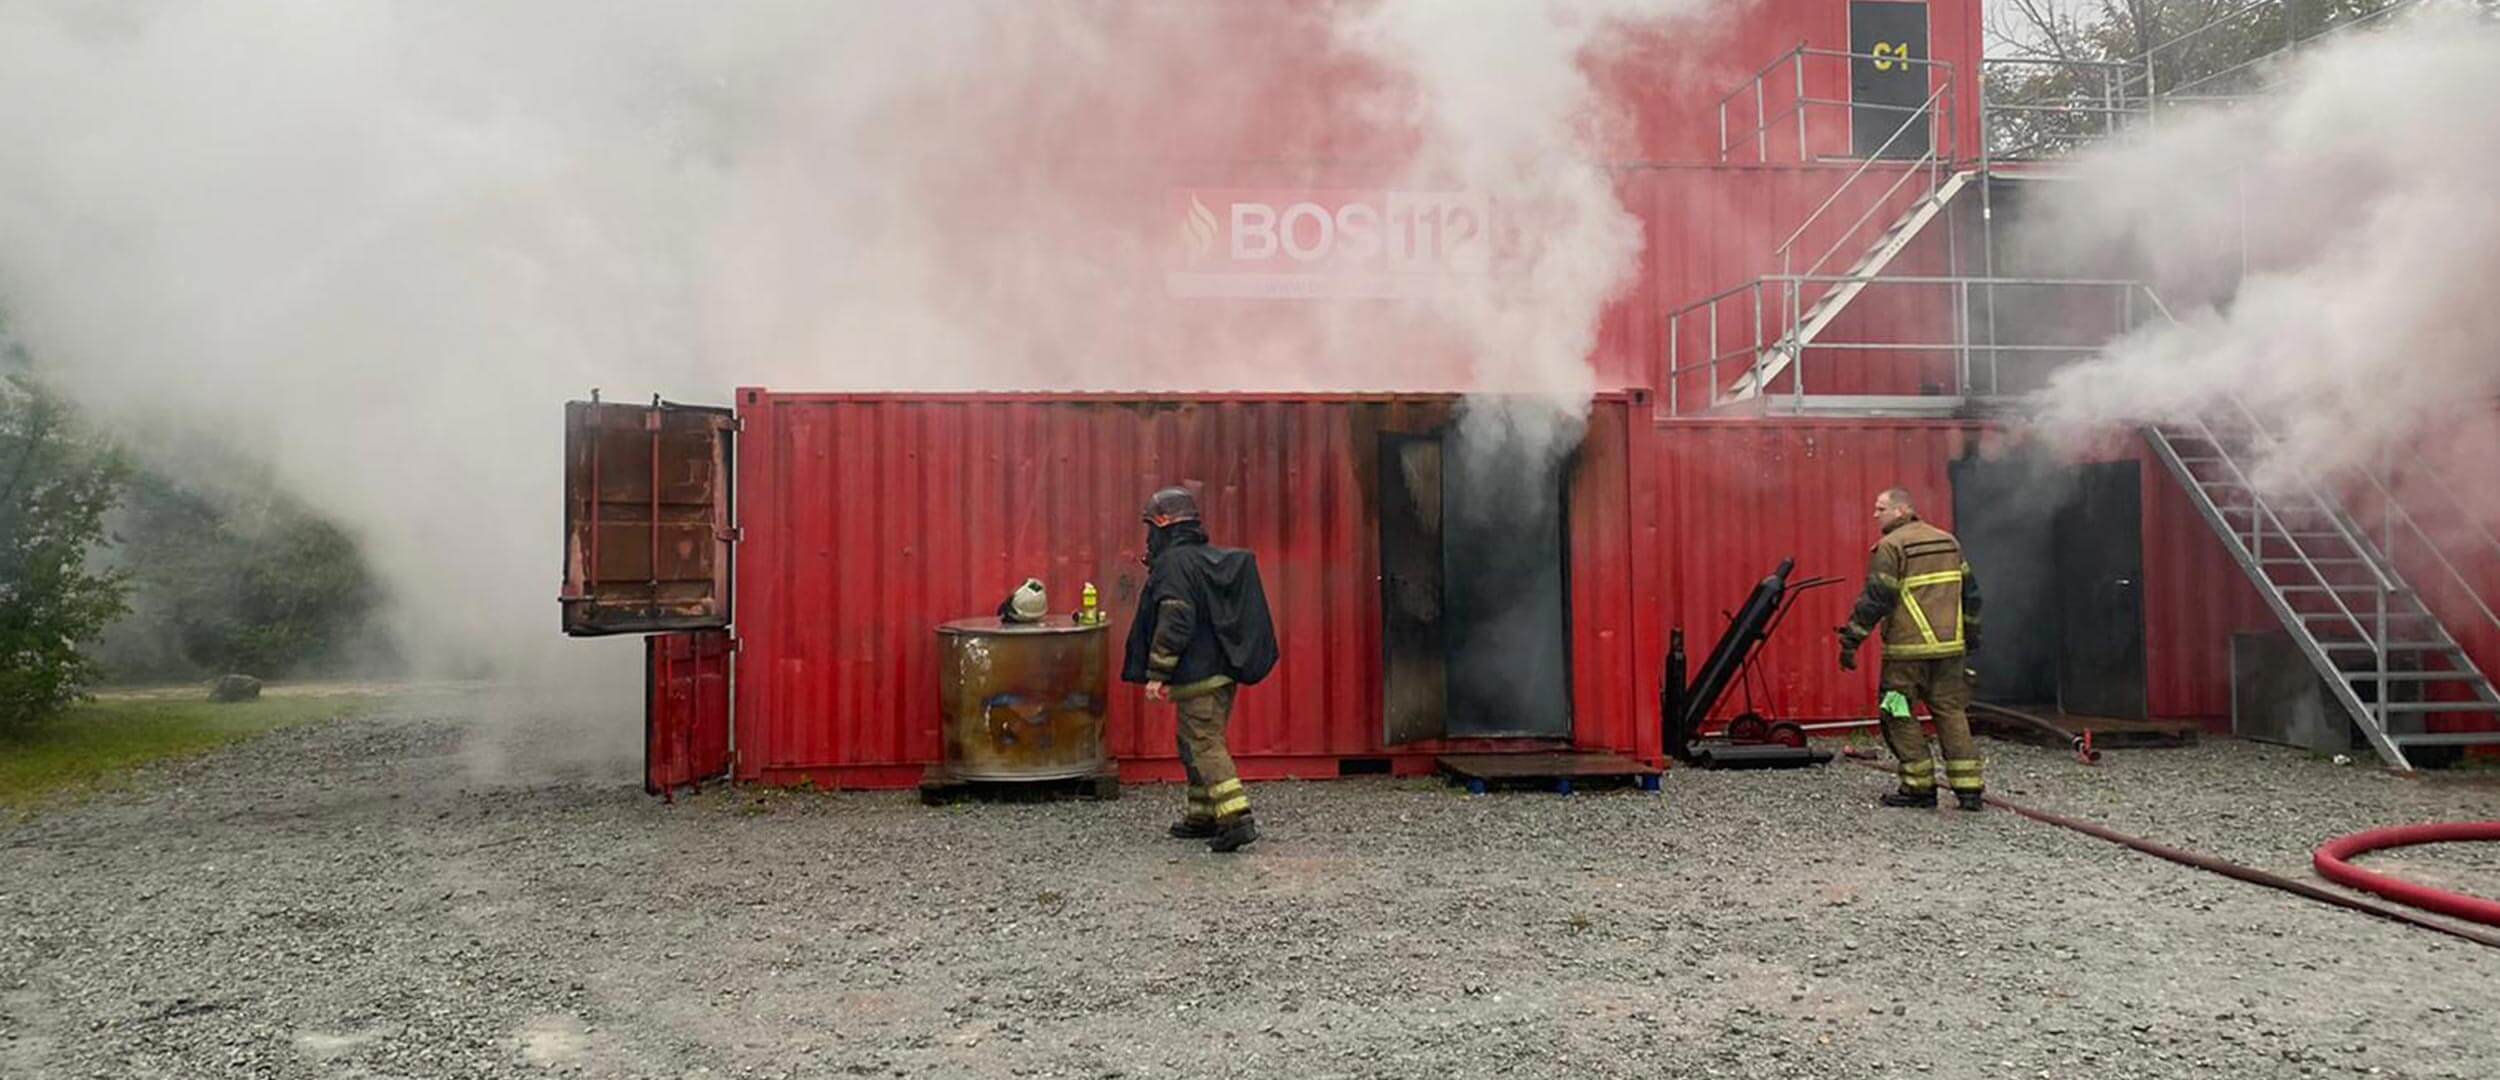 Rauch quillt aus einem roten Trainingscontainer